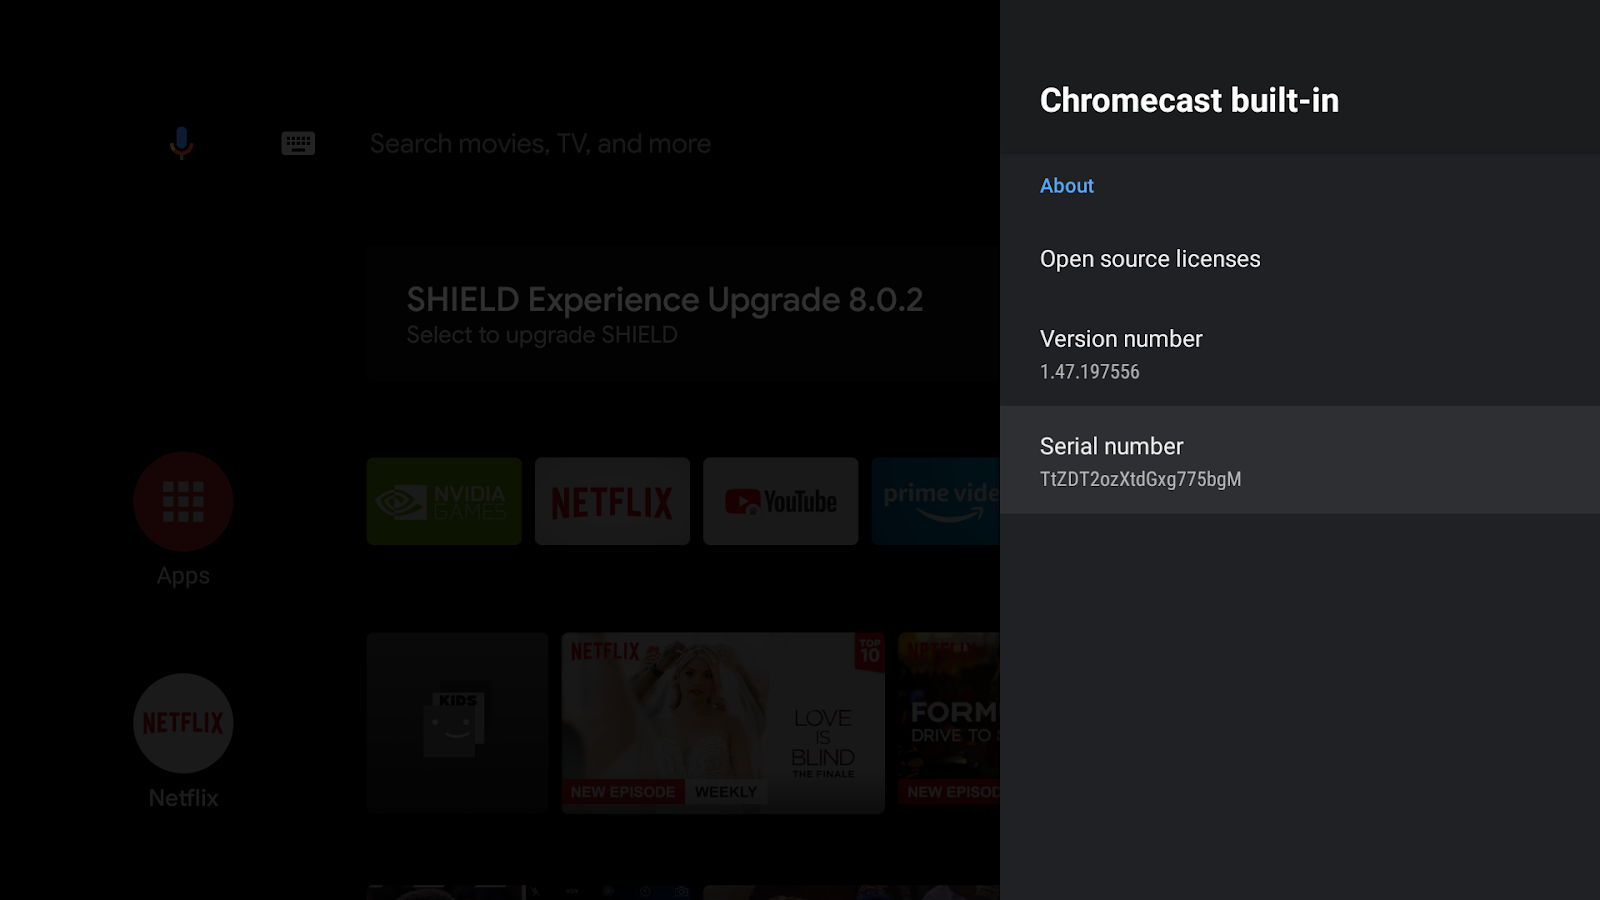 תמונה של מסך Android TV שמוצג בו המסך של Chromecast Built-In, מספר הגרסה והמספר הסידורי